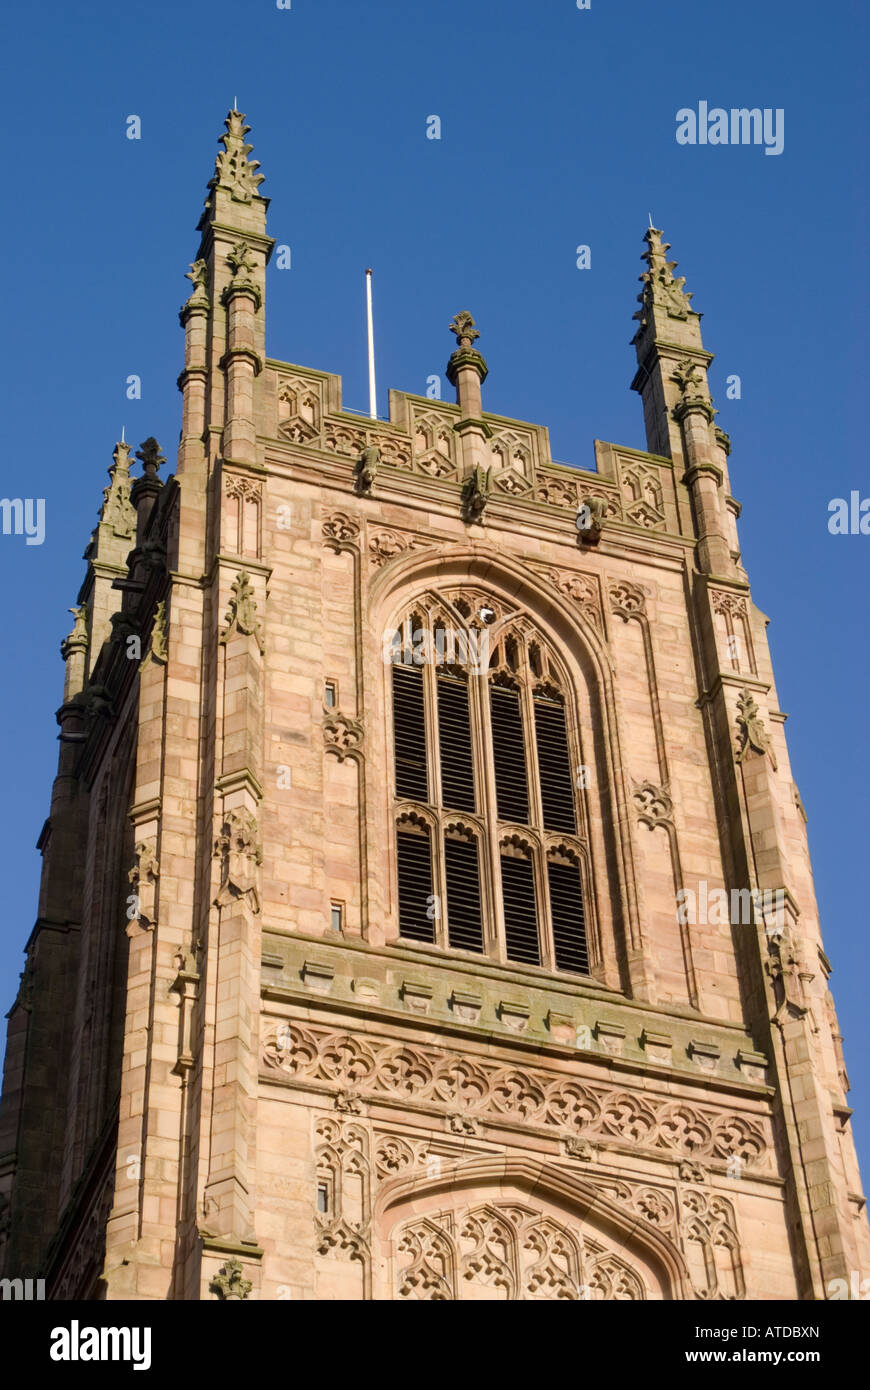 La tour de la cathédrale de Derby Banque D'Images